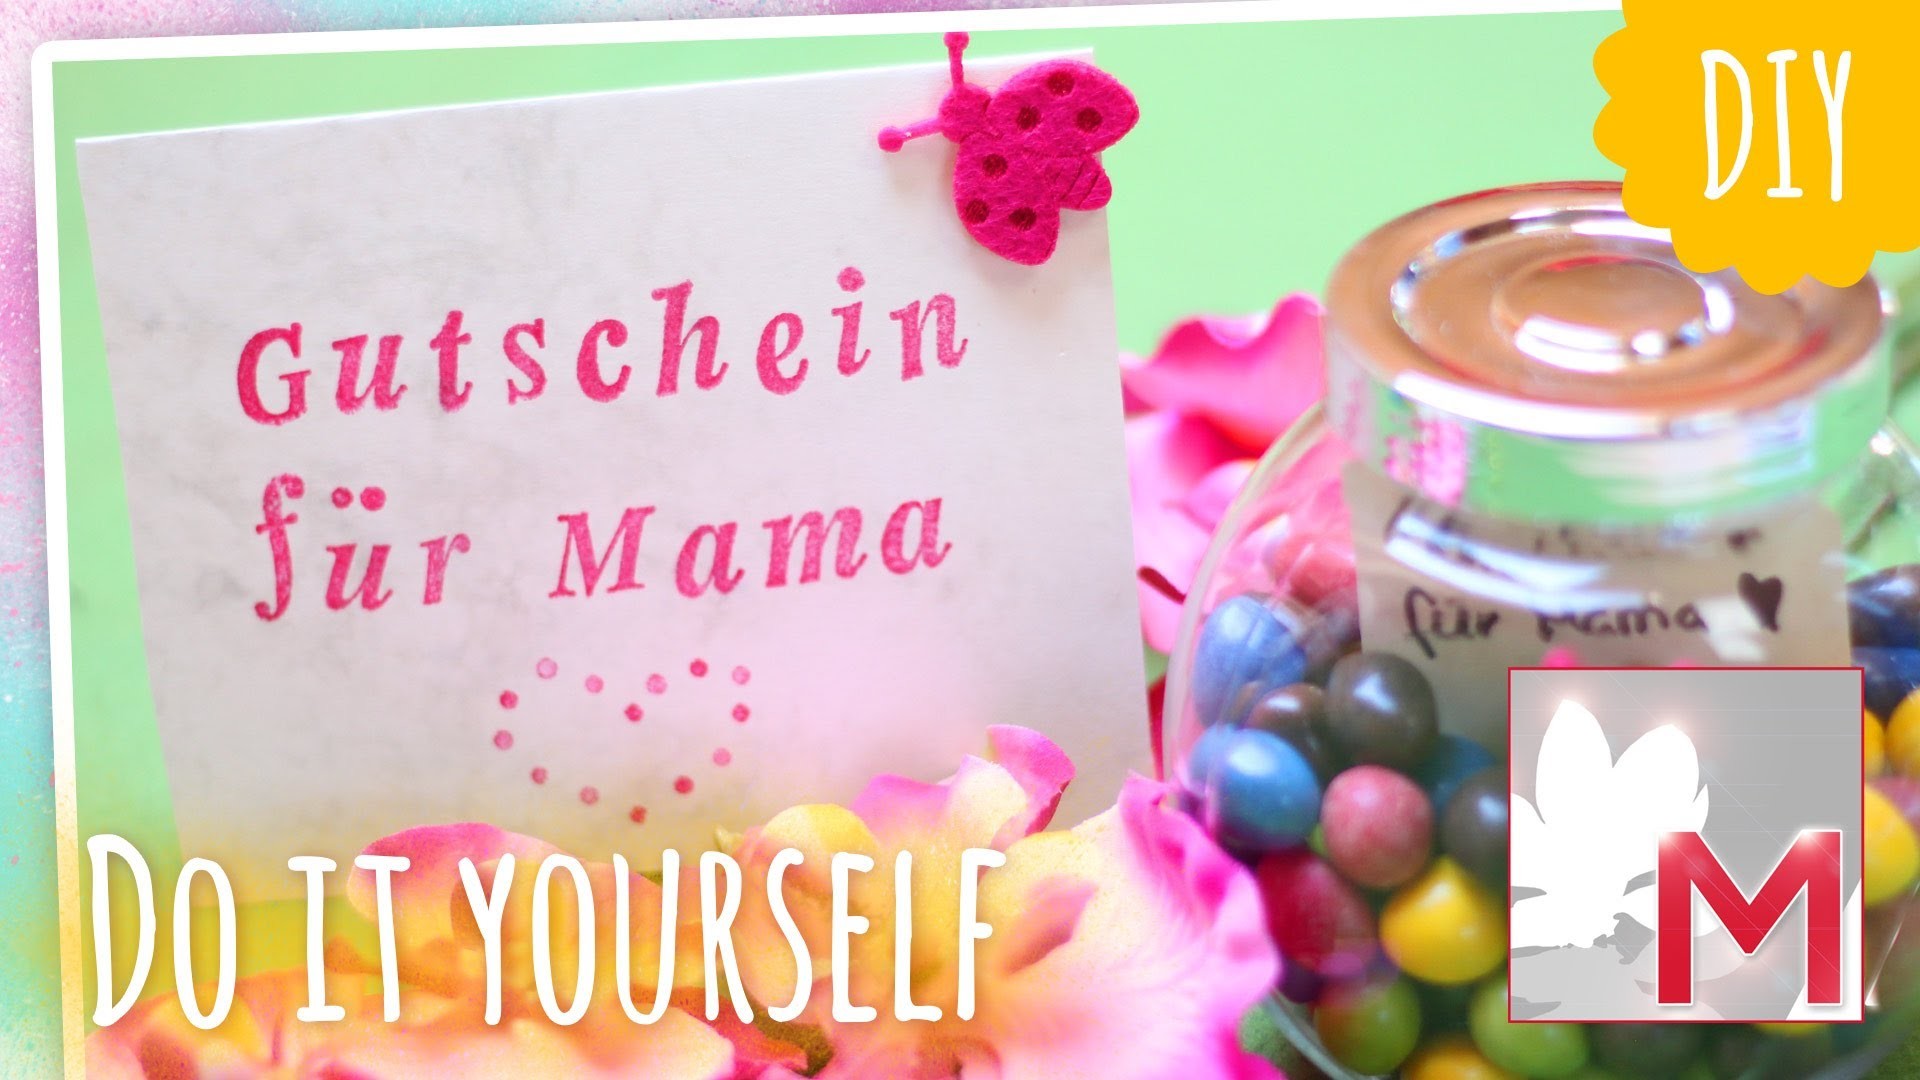 DIY kreative Gutscheine & Karten zum Muttertag